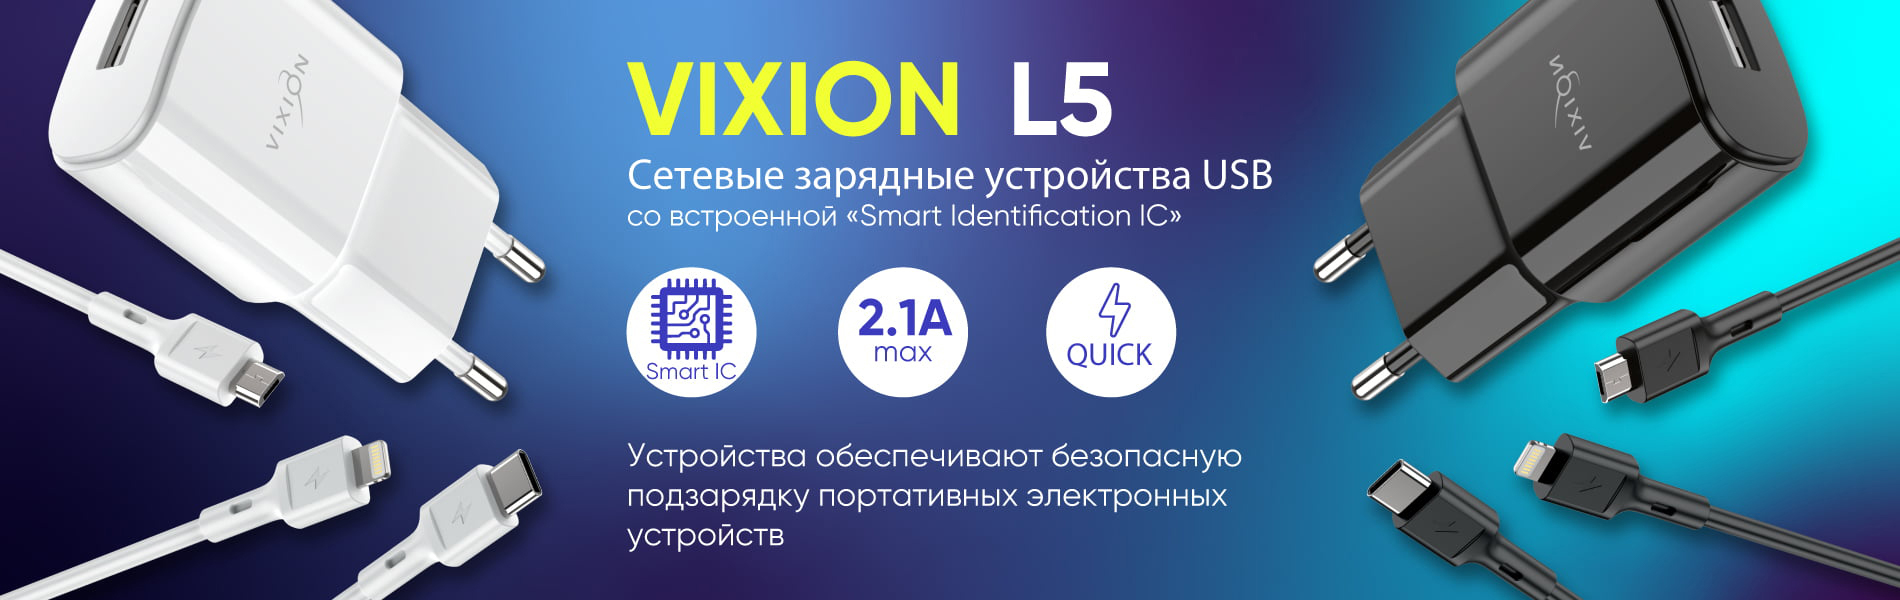 Сетевые зарядные устройства USB Vixion L5 для зарядки смартфонов